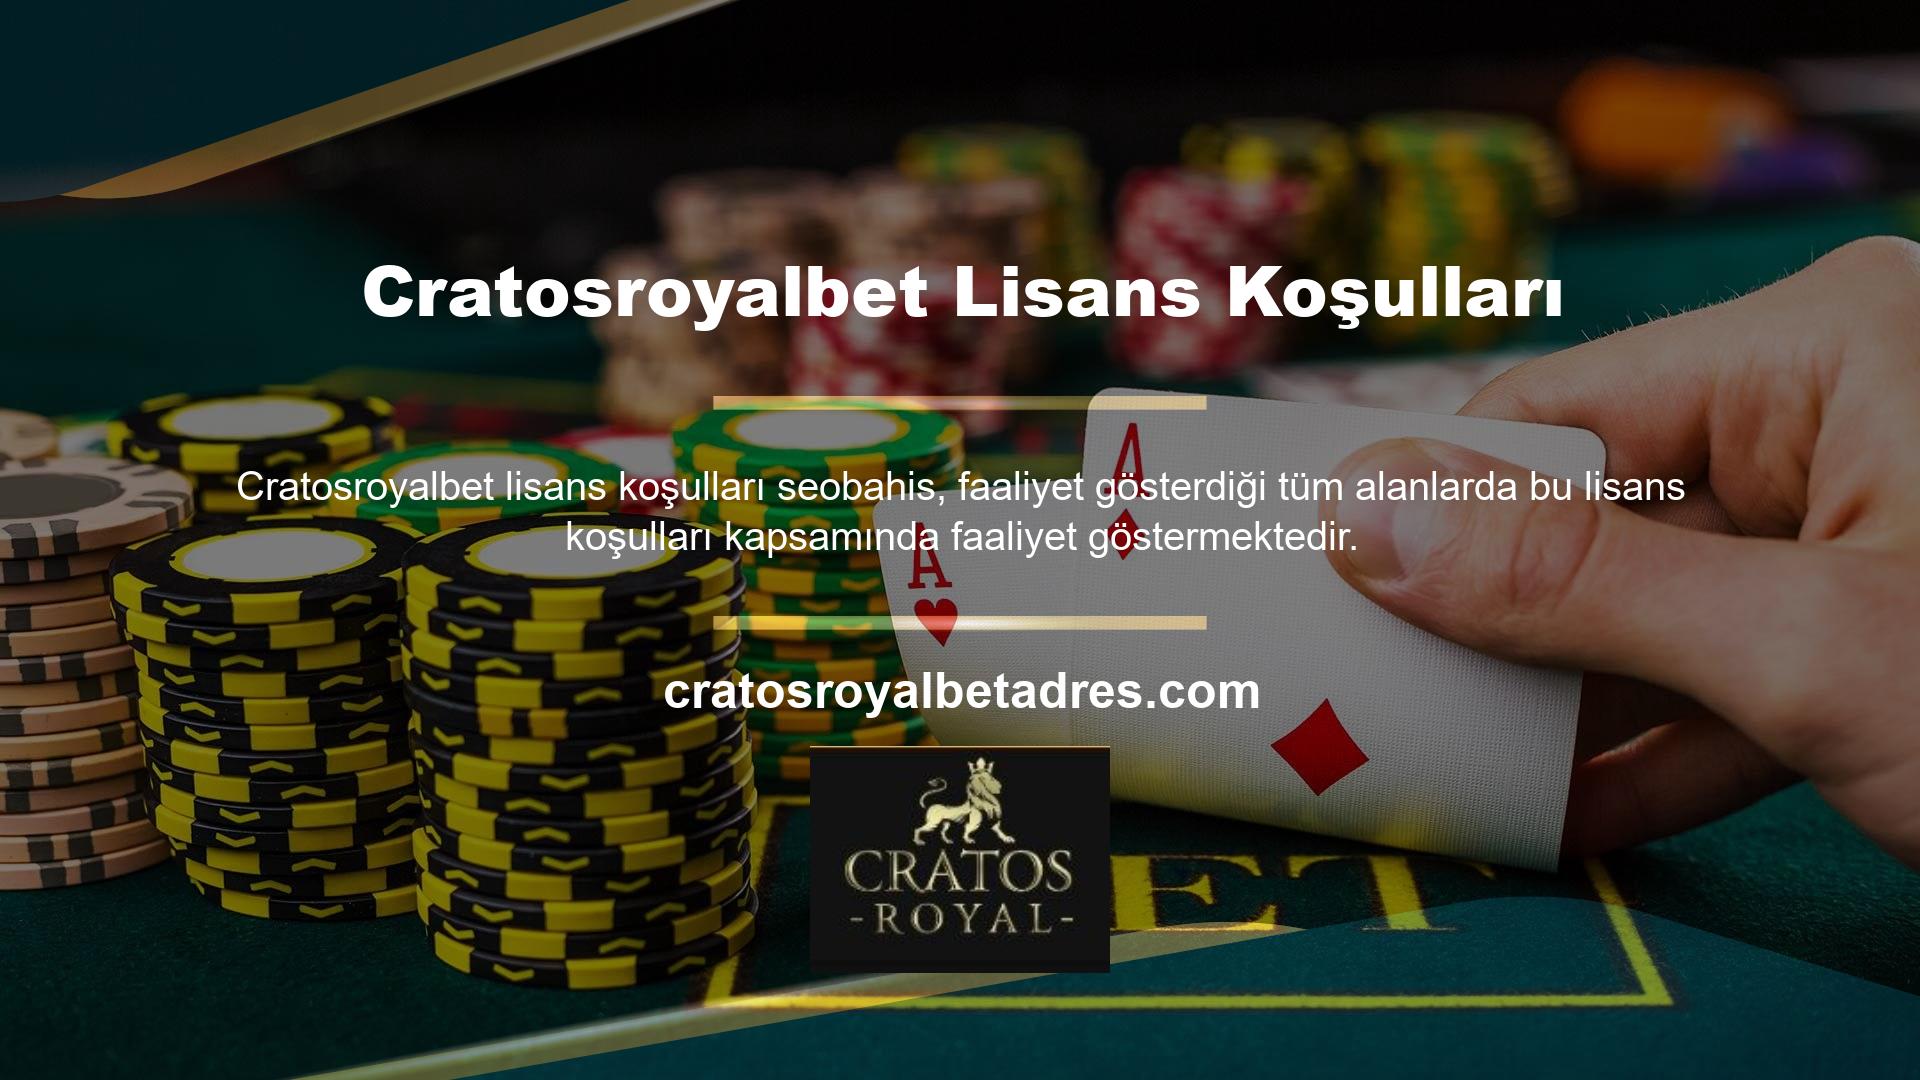 Cratosroyalbet, çevrimiçi casino ve casino alanındaki hizmetleriyle bazı başarılar elde etmeye devam ediyor